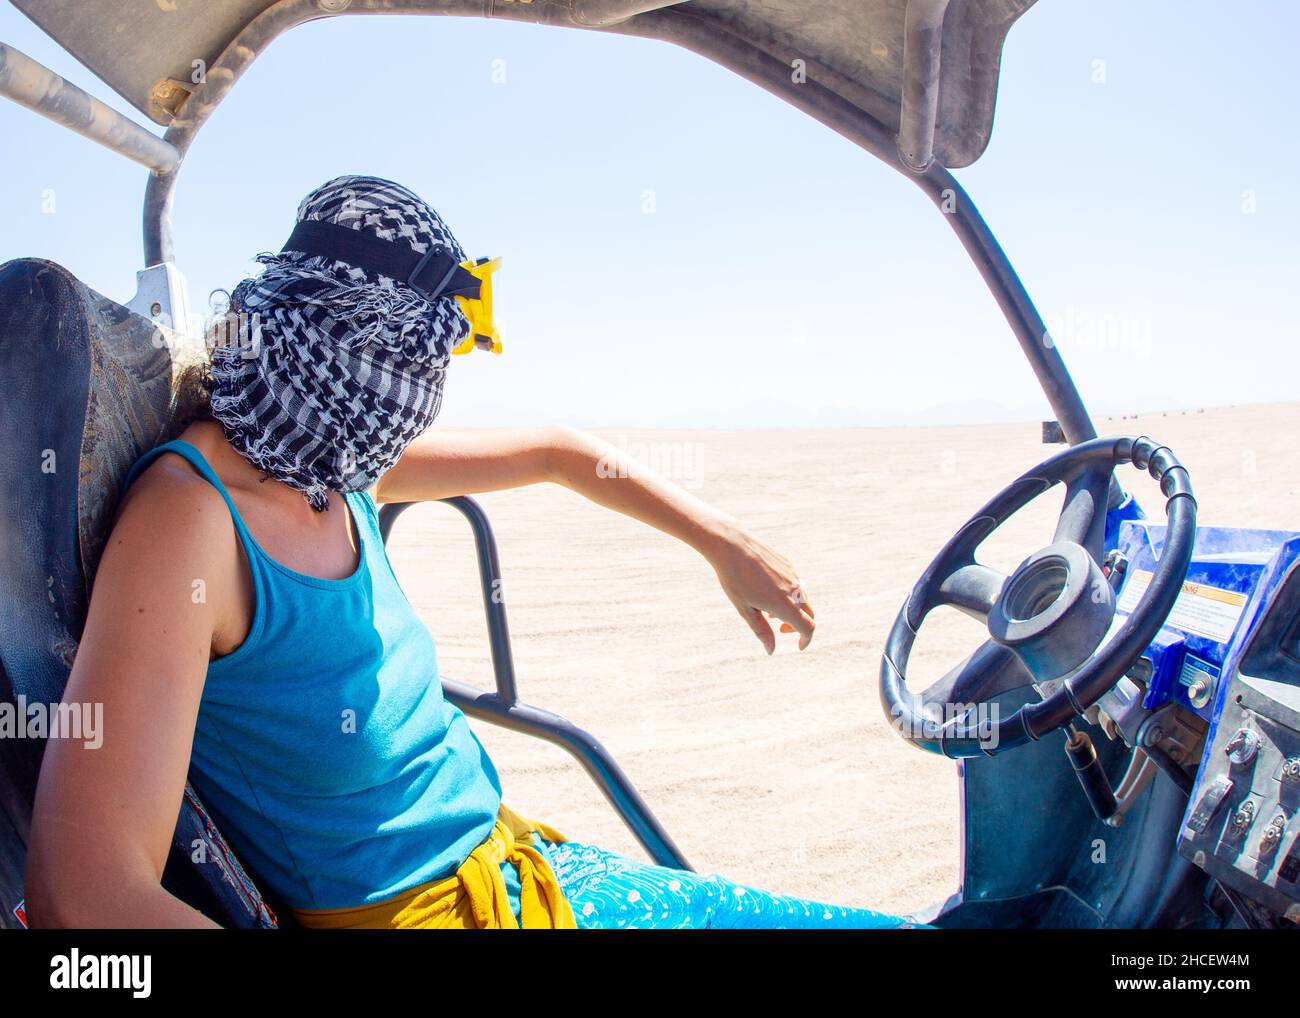 VTT touristes en egypte hurgada s'amuser avant le soleil descend sur un sable chaud Banque D'Images